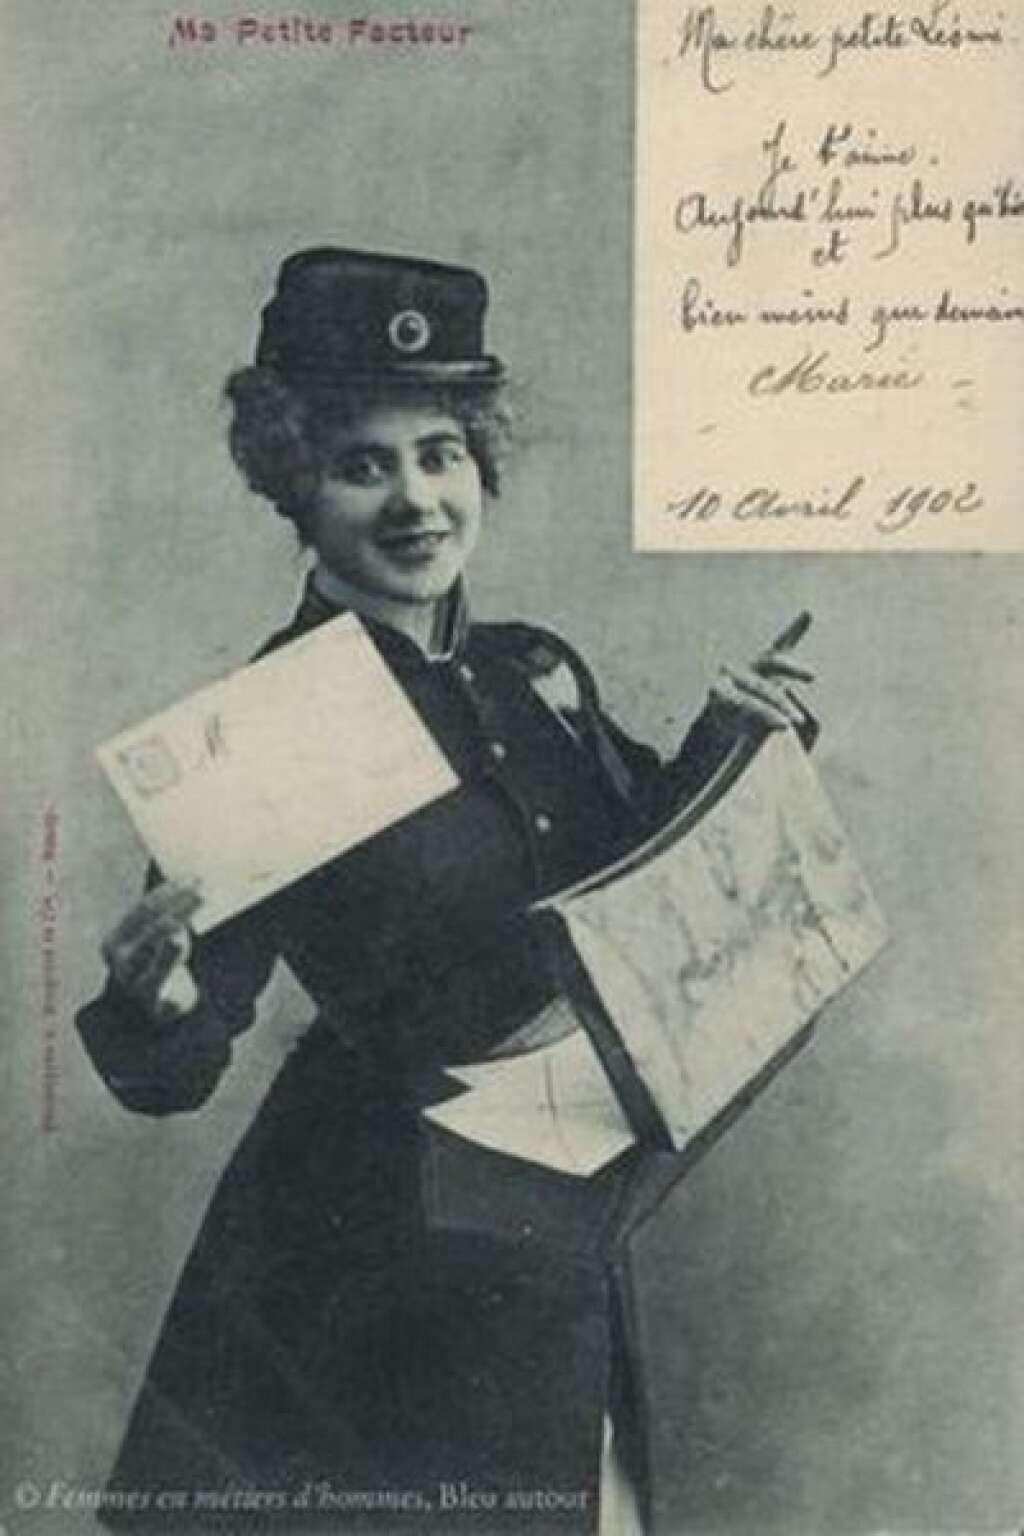 La factrice - "Au cours de la même période, la carte postale devient un outil de communication hégémonique. On s’écrit souvent plusieurs fois par jour (à Paris, en 1907, le facteur passe 7 à 8 fois par jour déposer le courrier). En France, en 1913, 800 millions de cartes sont expédiées, près d’un milliard en Allemagne la même année. Et les éditeurs de cartes postales s’emparent des images de femmes exerçant une activité traditionnellement accomplie par des hommes …par exemple distribuer le courrier : la factrice devient un personnage des cartes fantaisie de l’époque".